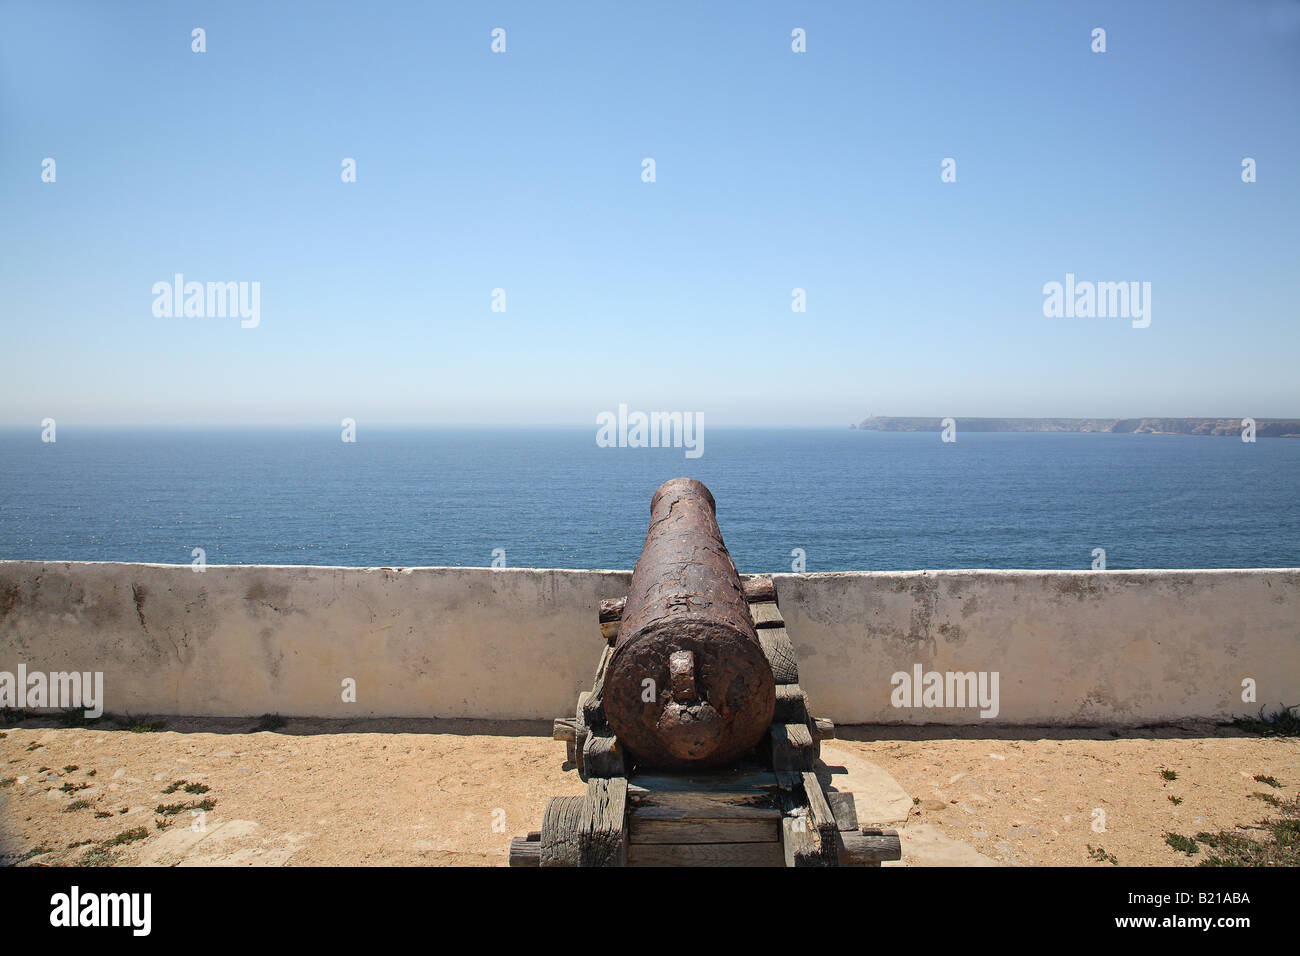 A canon at Fortaleza de Sagres, Sagres, Portugal Stock Photo